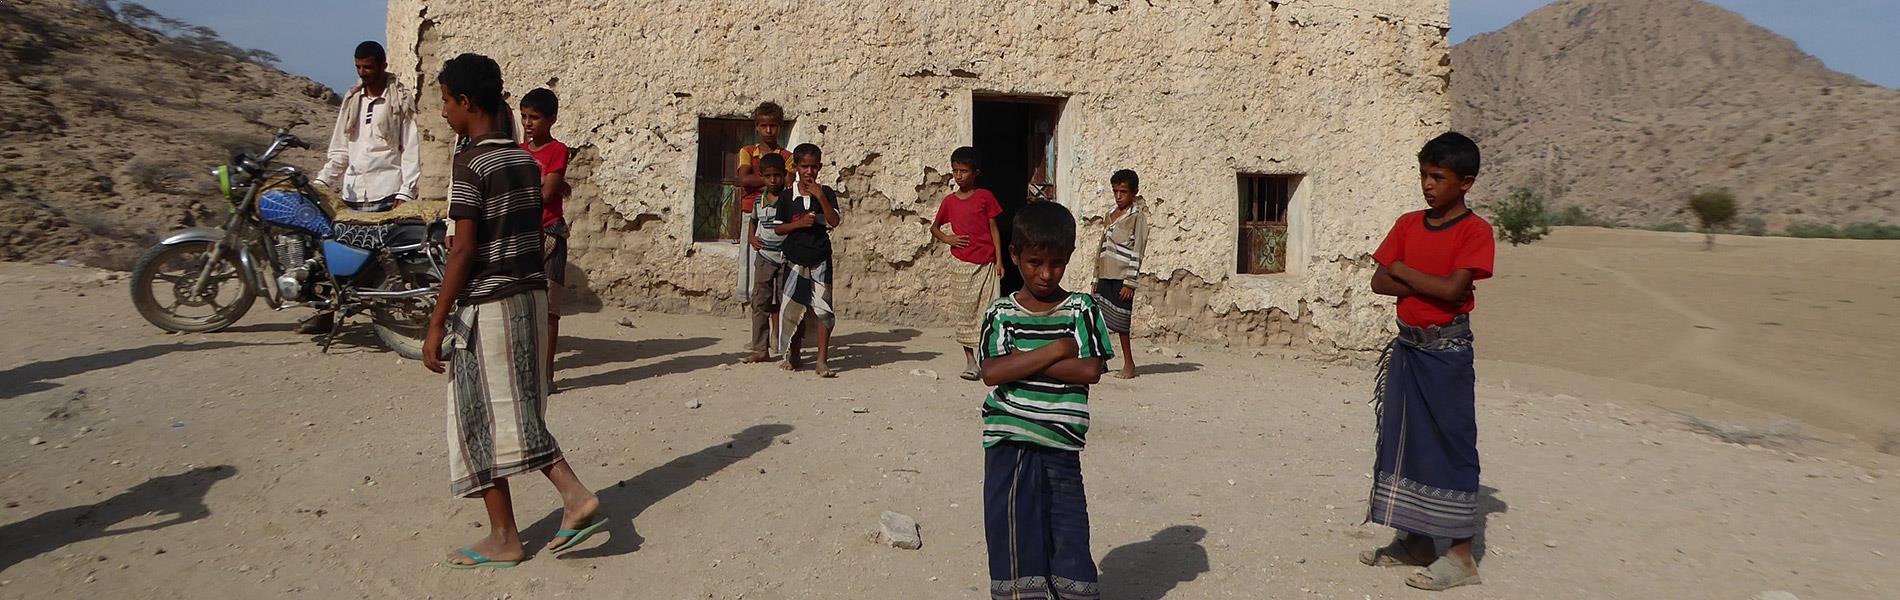 Yémen Enfants Désert